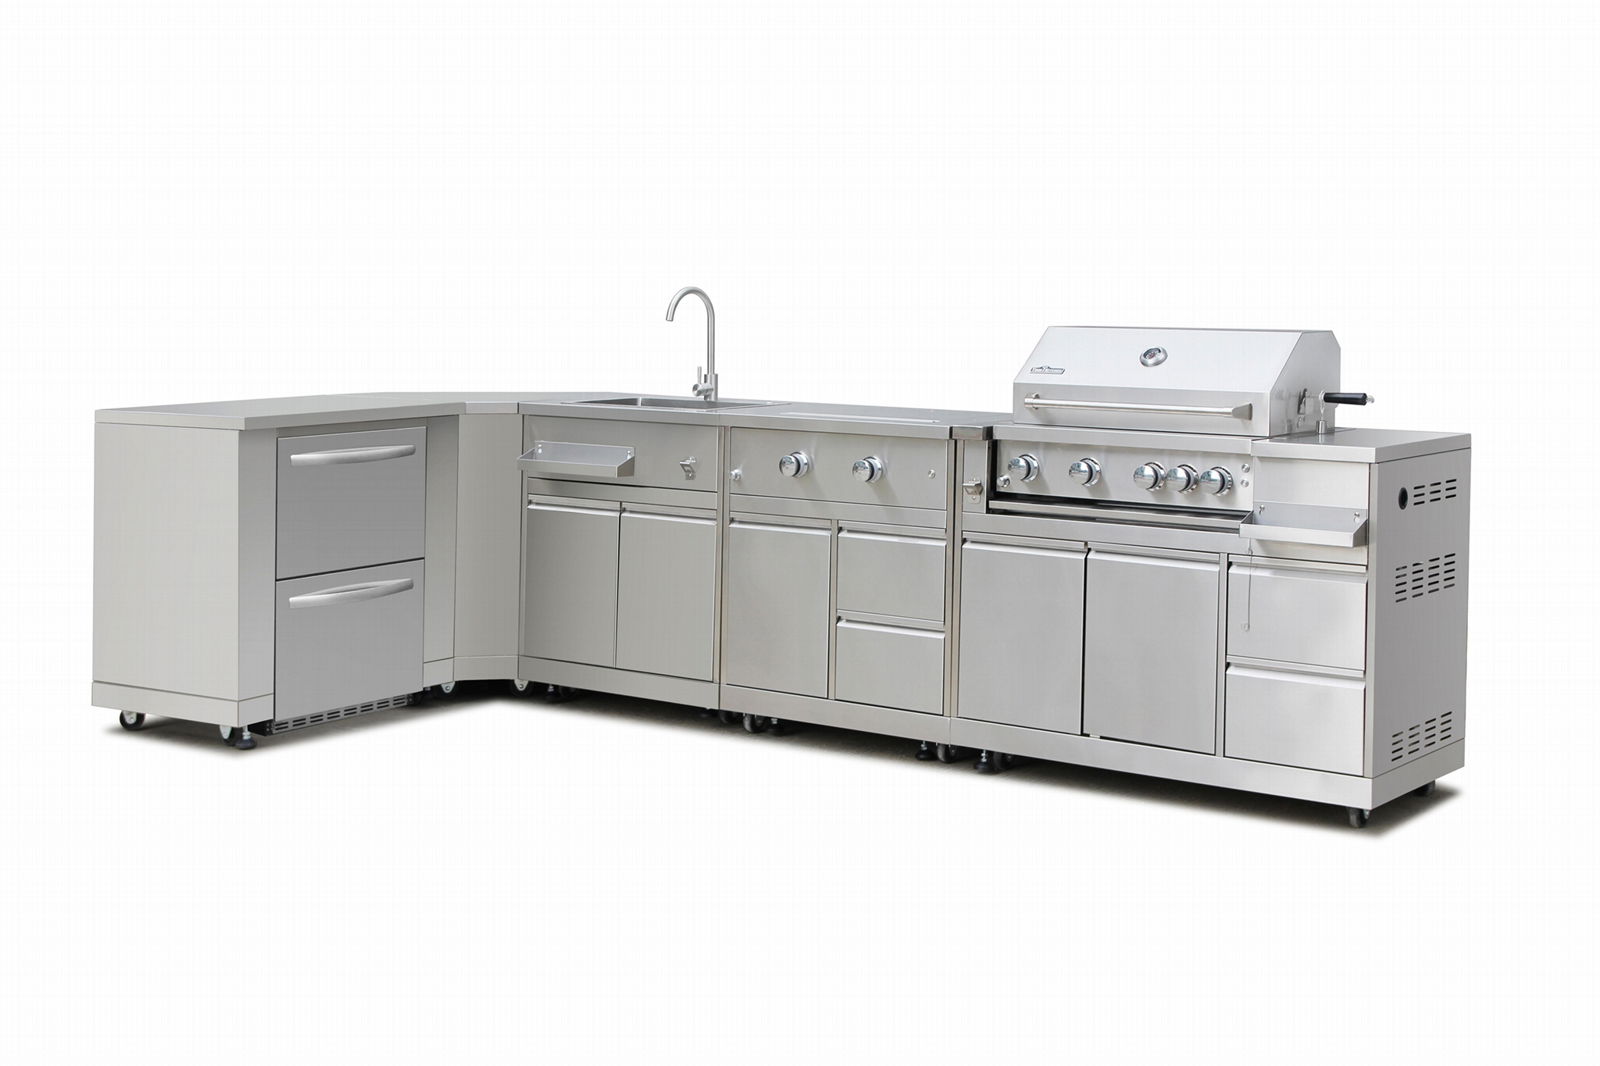 SUS 304 MK series stainless steel outdoor kitchen cabinet  4